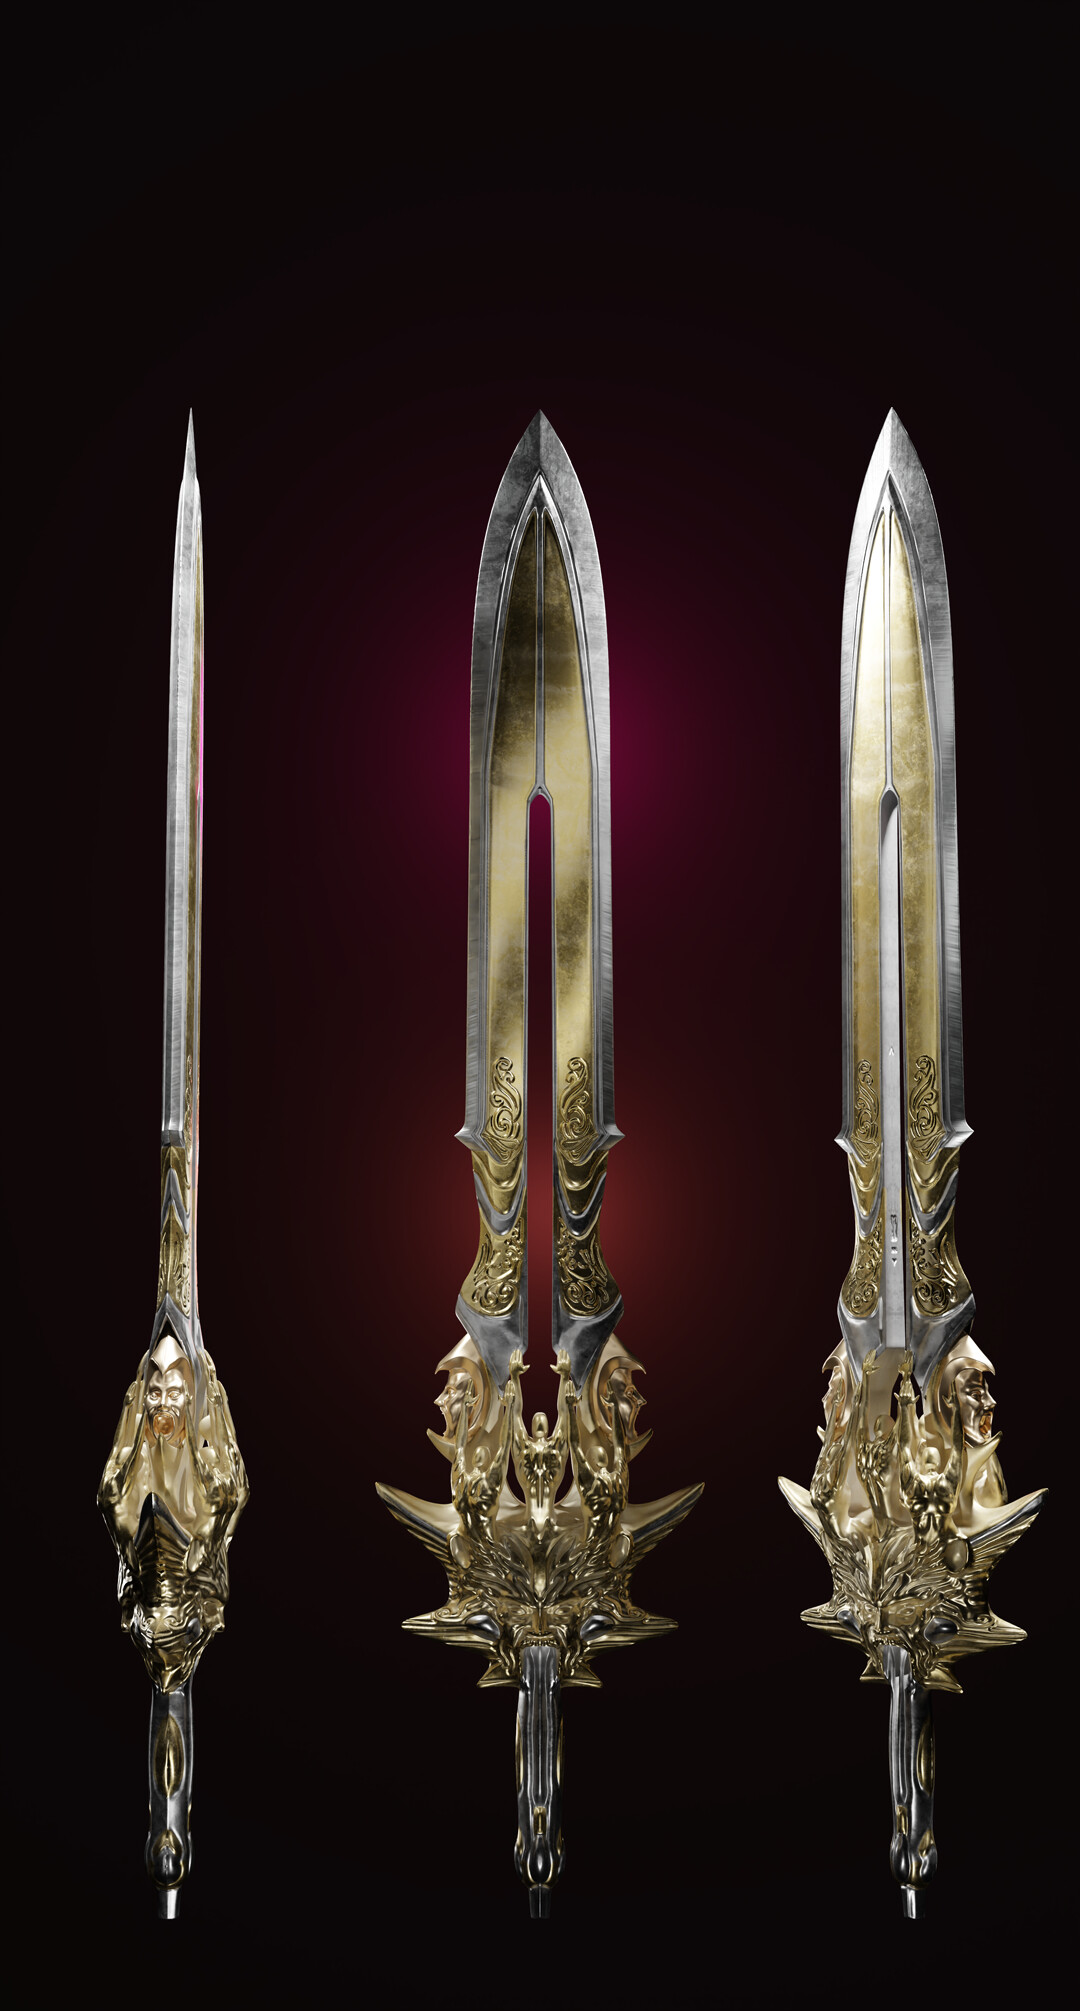 Blade of olympus 3D model